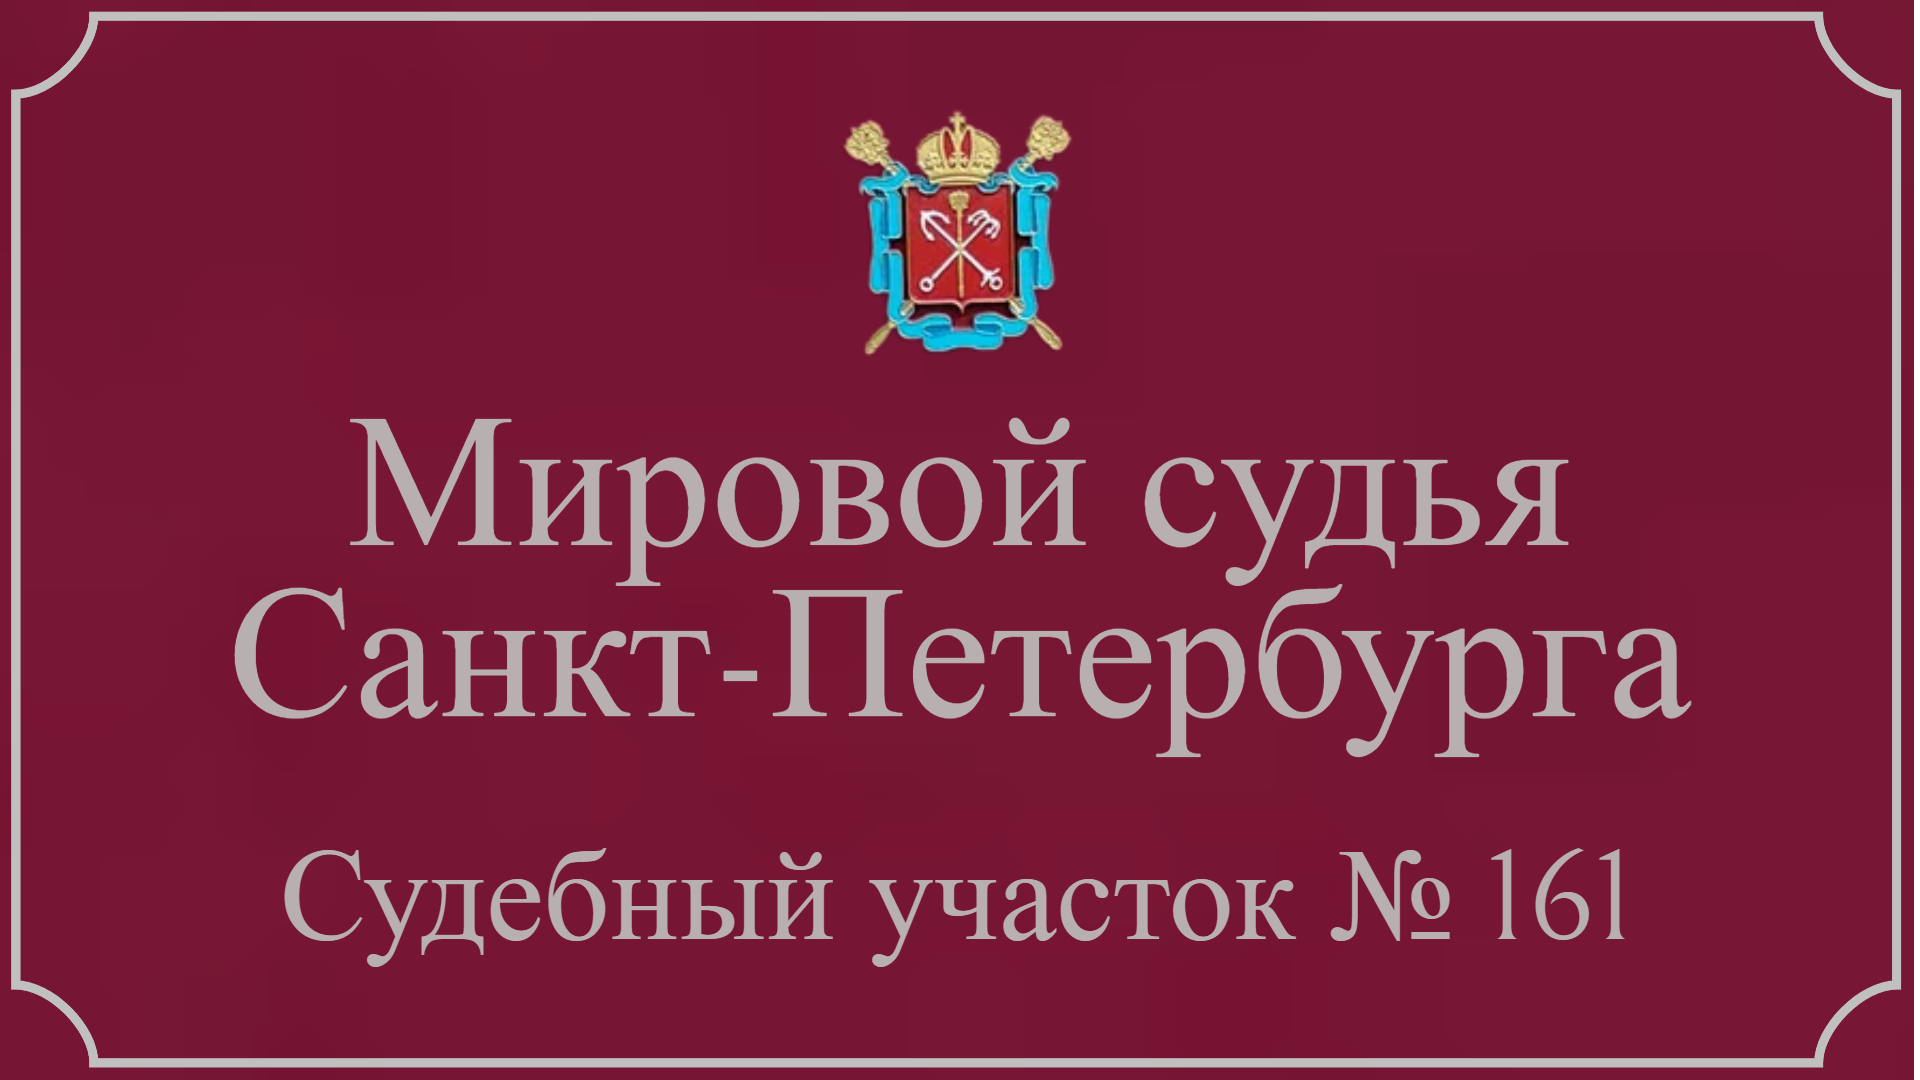 Информация по 161 судебному участку в Санкт-Петербурге.